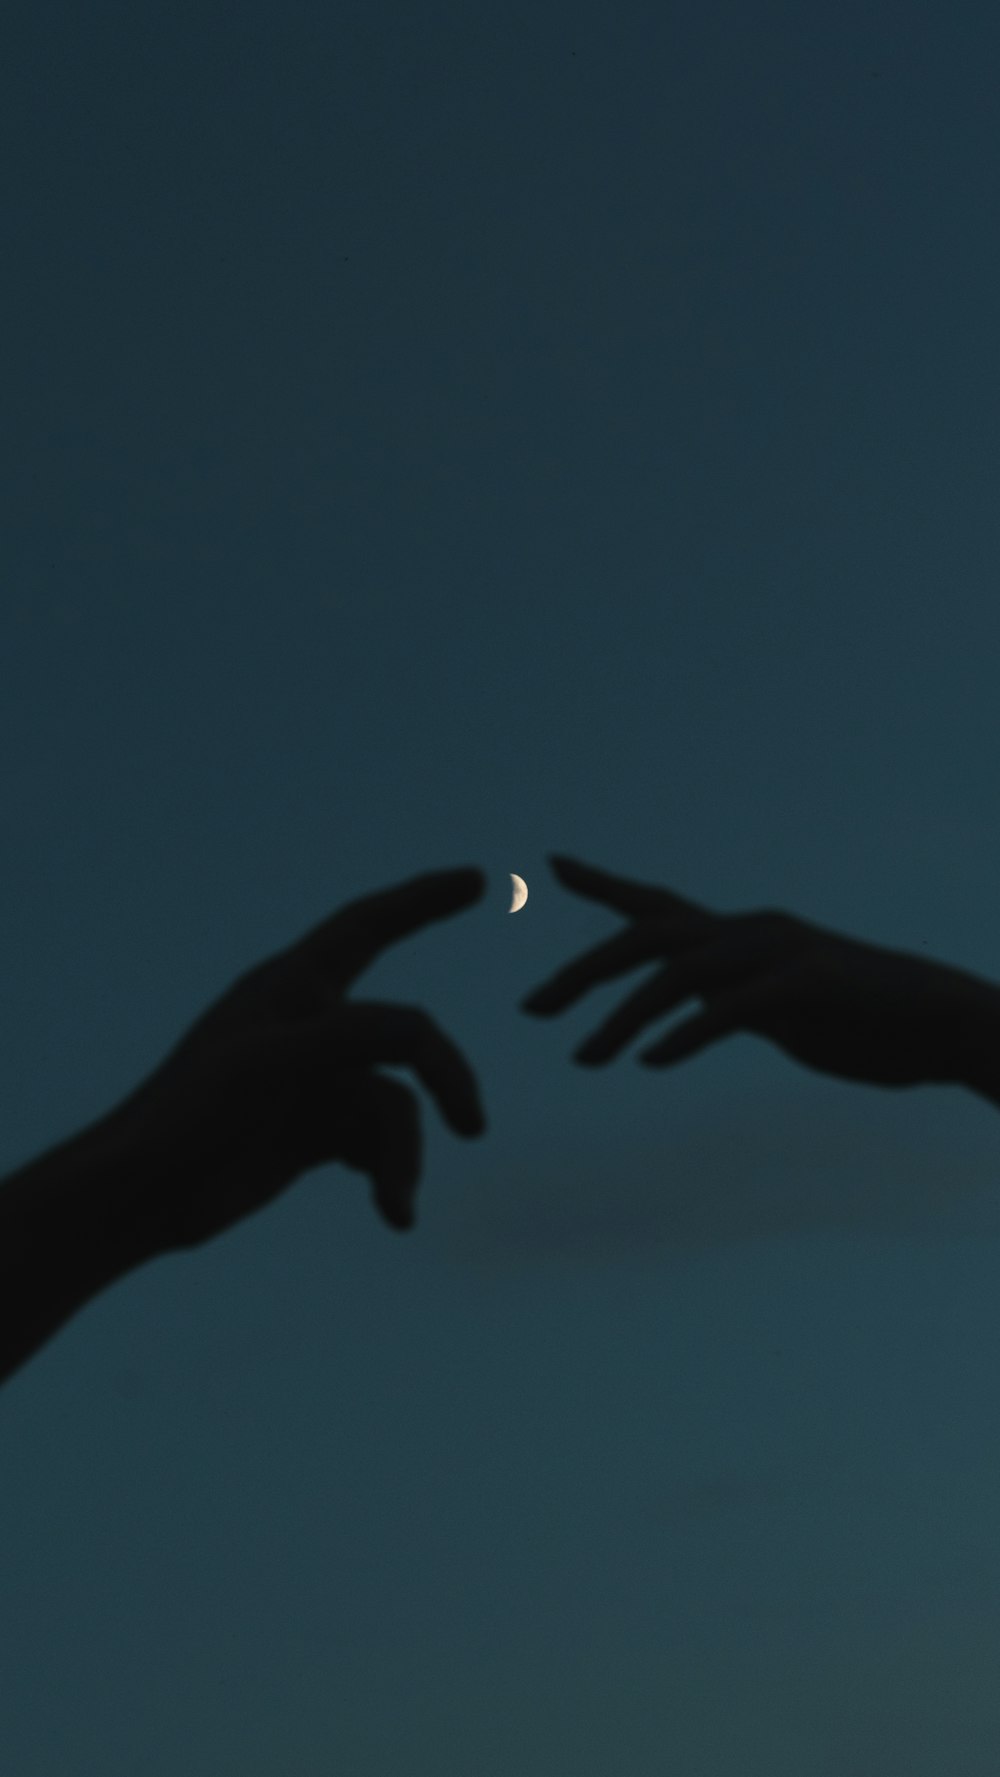 zwei Hände, die nach dem Mond am Himmel greifen